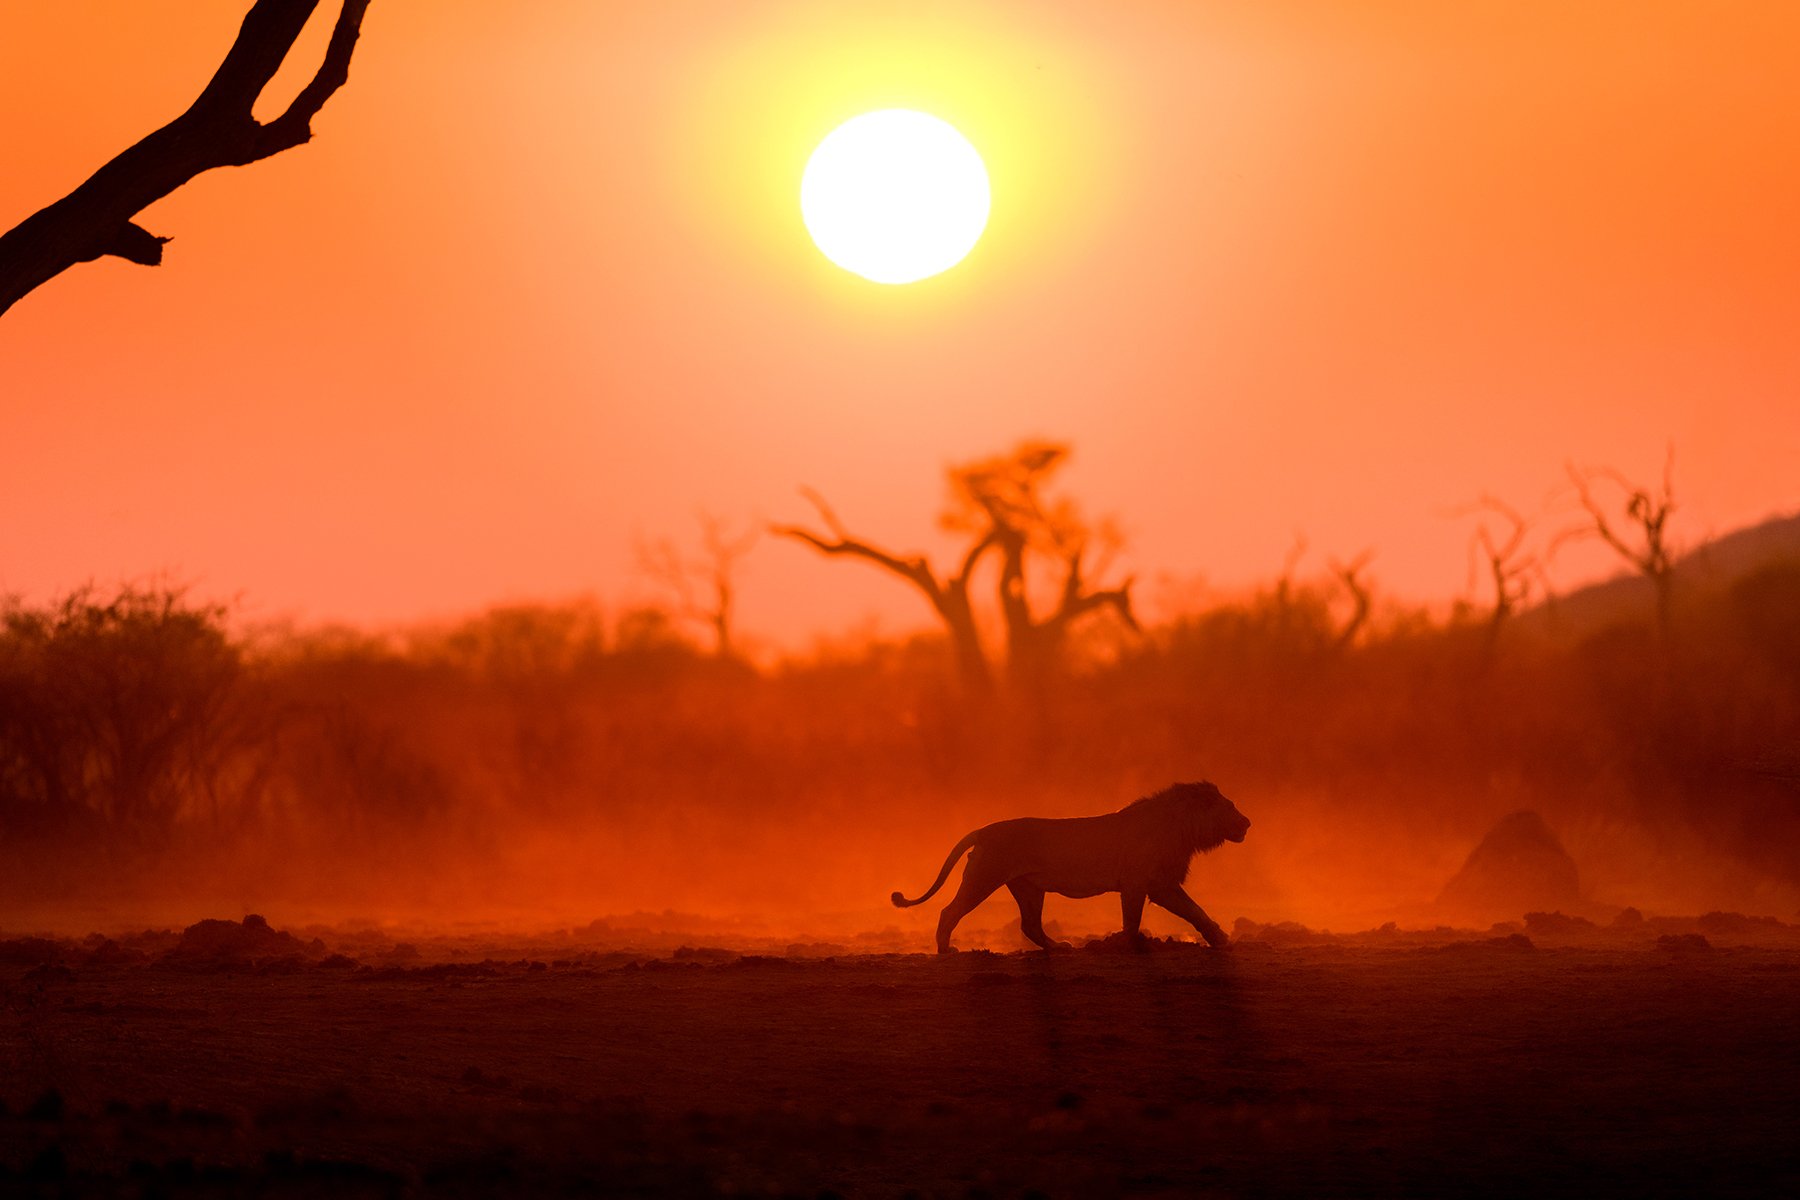 McLennan_Africa_wildlife16_0055.jpg